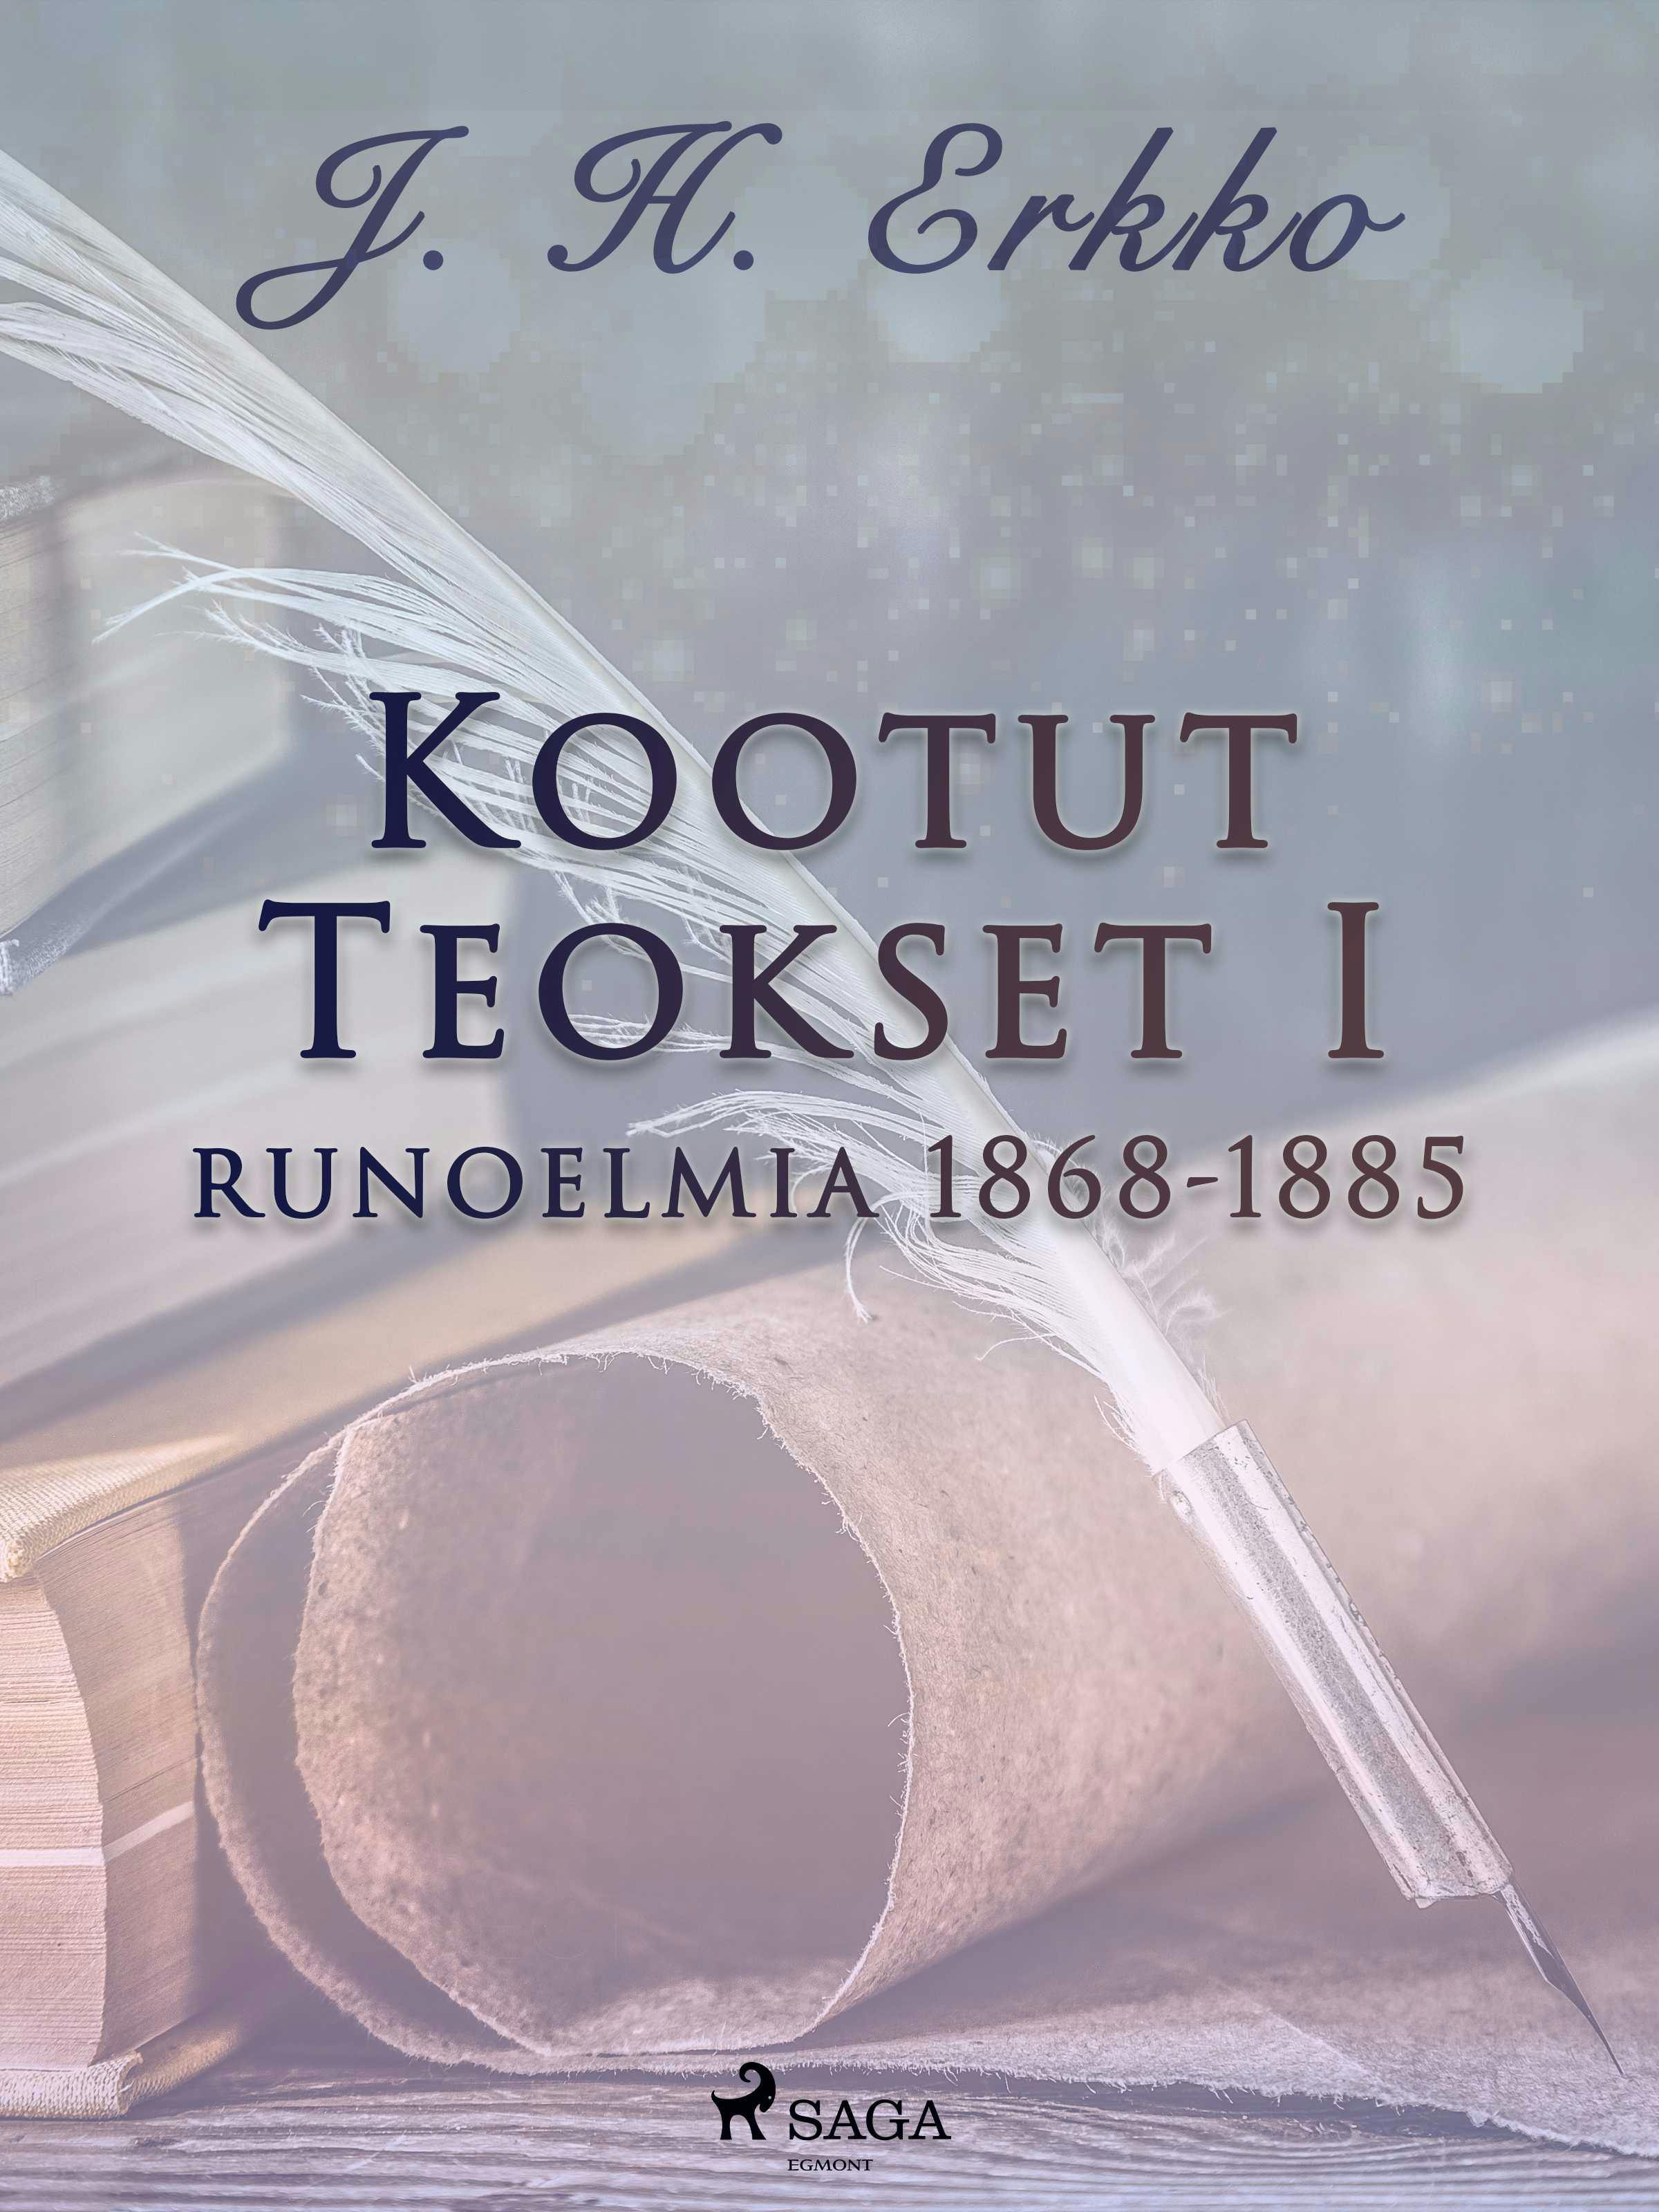 Kootut Teokset I: runoelmia 1868-1885 - J. H. Erkko